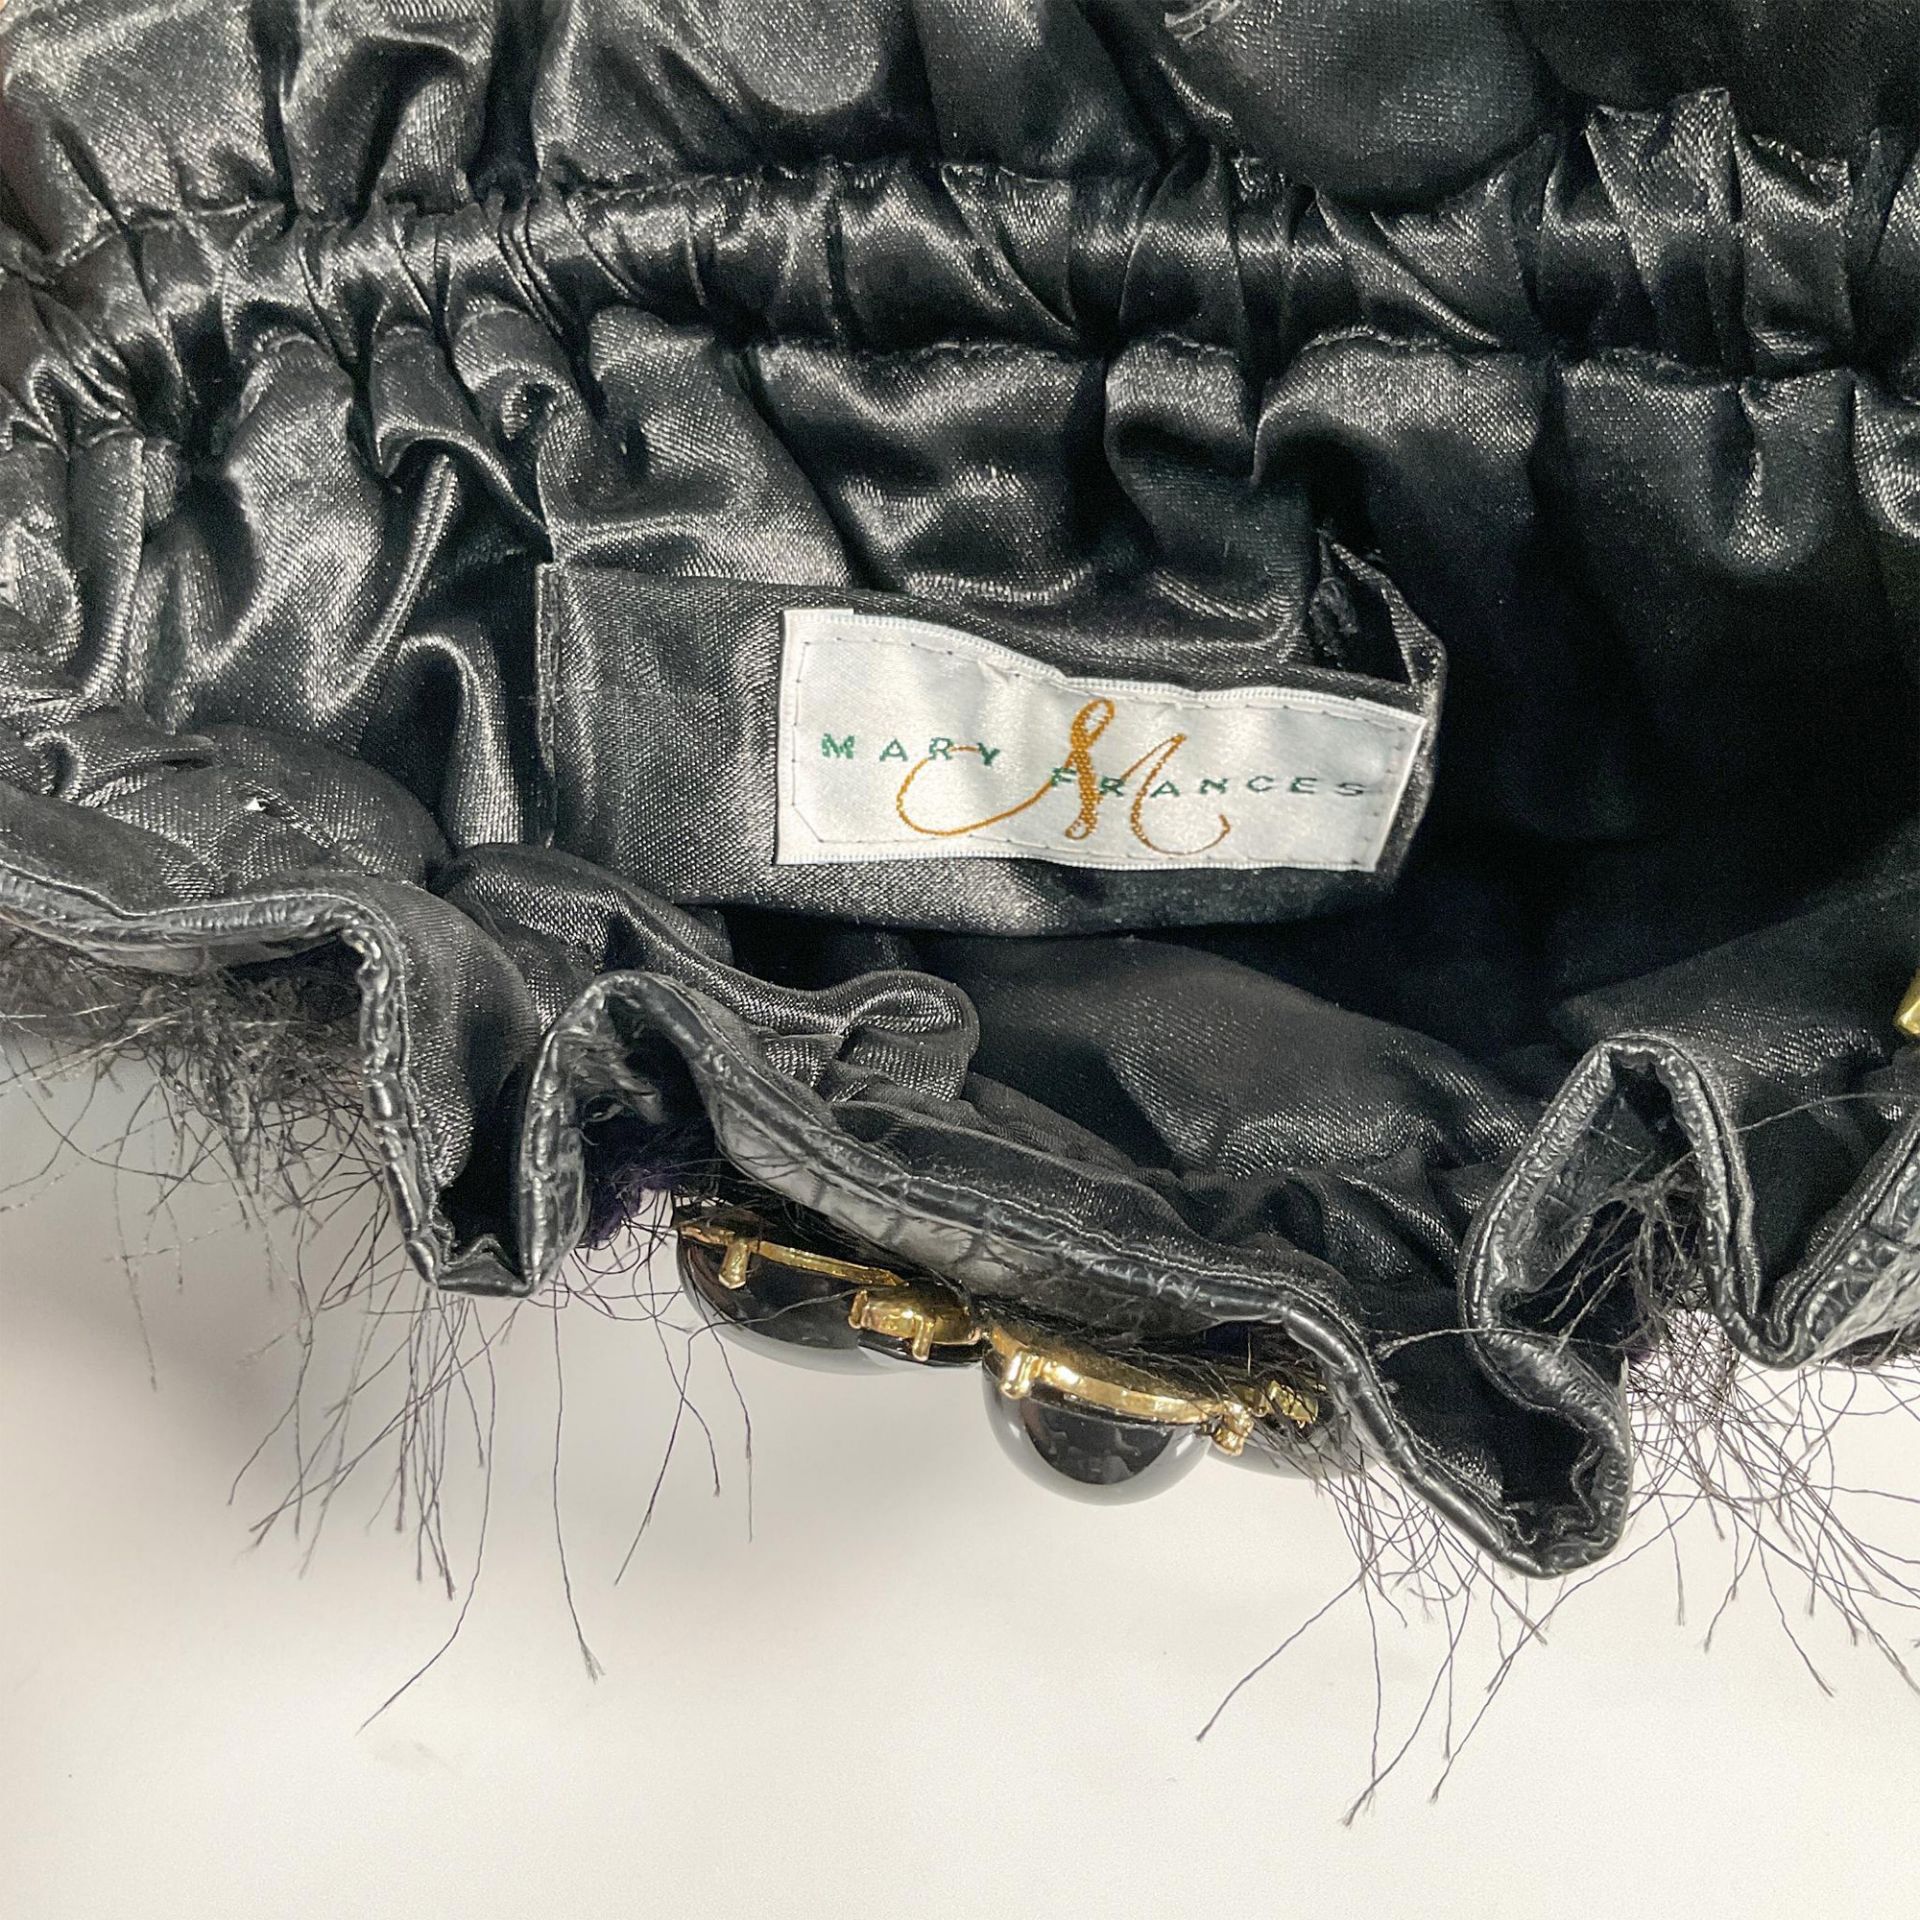 Mary Frances Shoulder Bag, Black Elephant Motif - Image 4 of 4